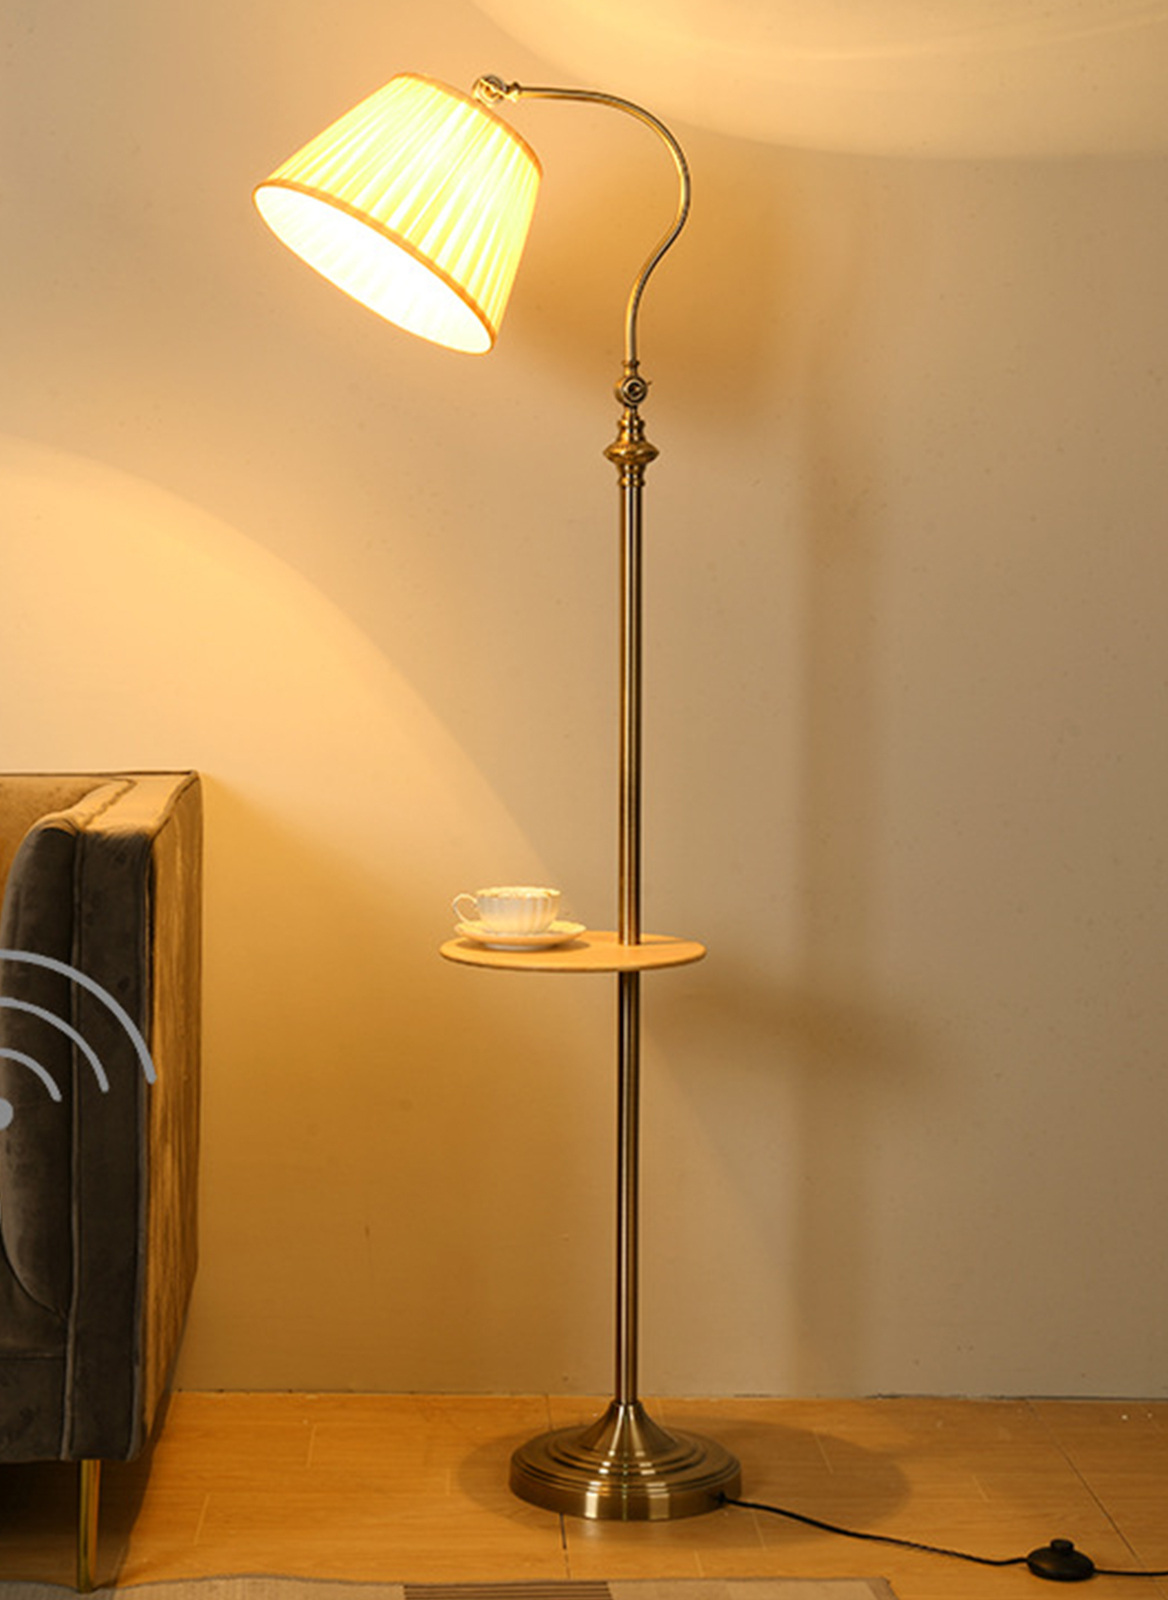 Modern Bedroom Bedside Floor Lamp 9W Warm Light